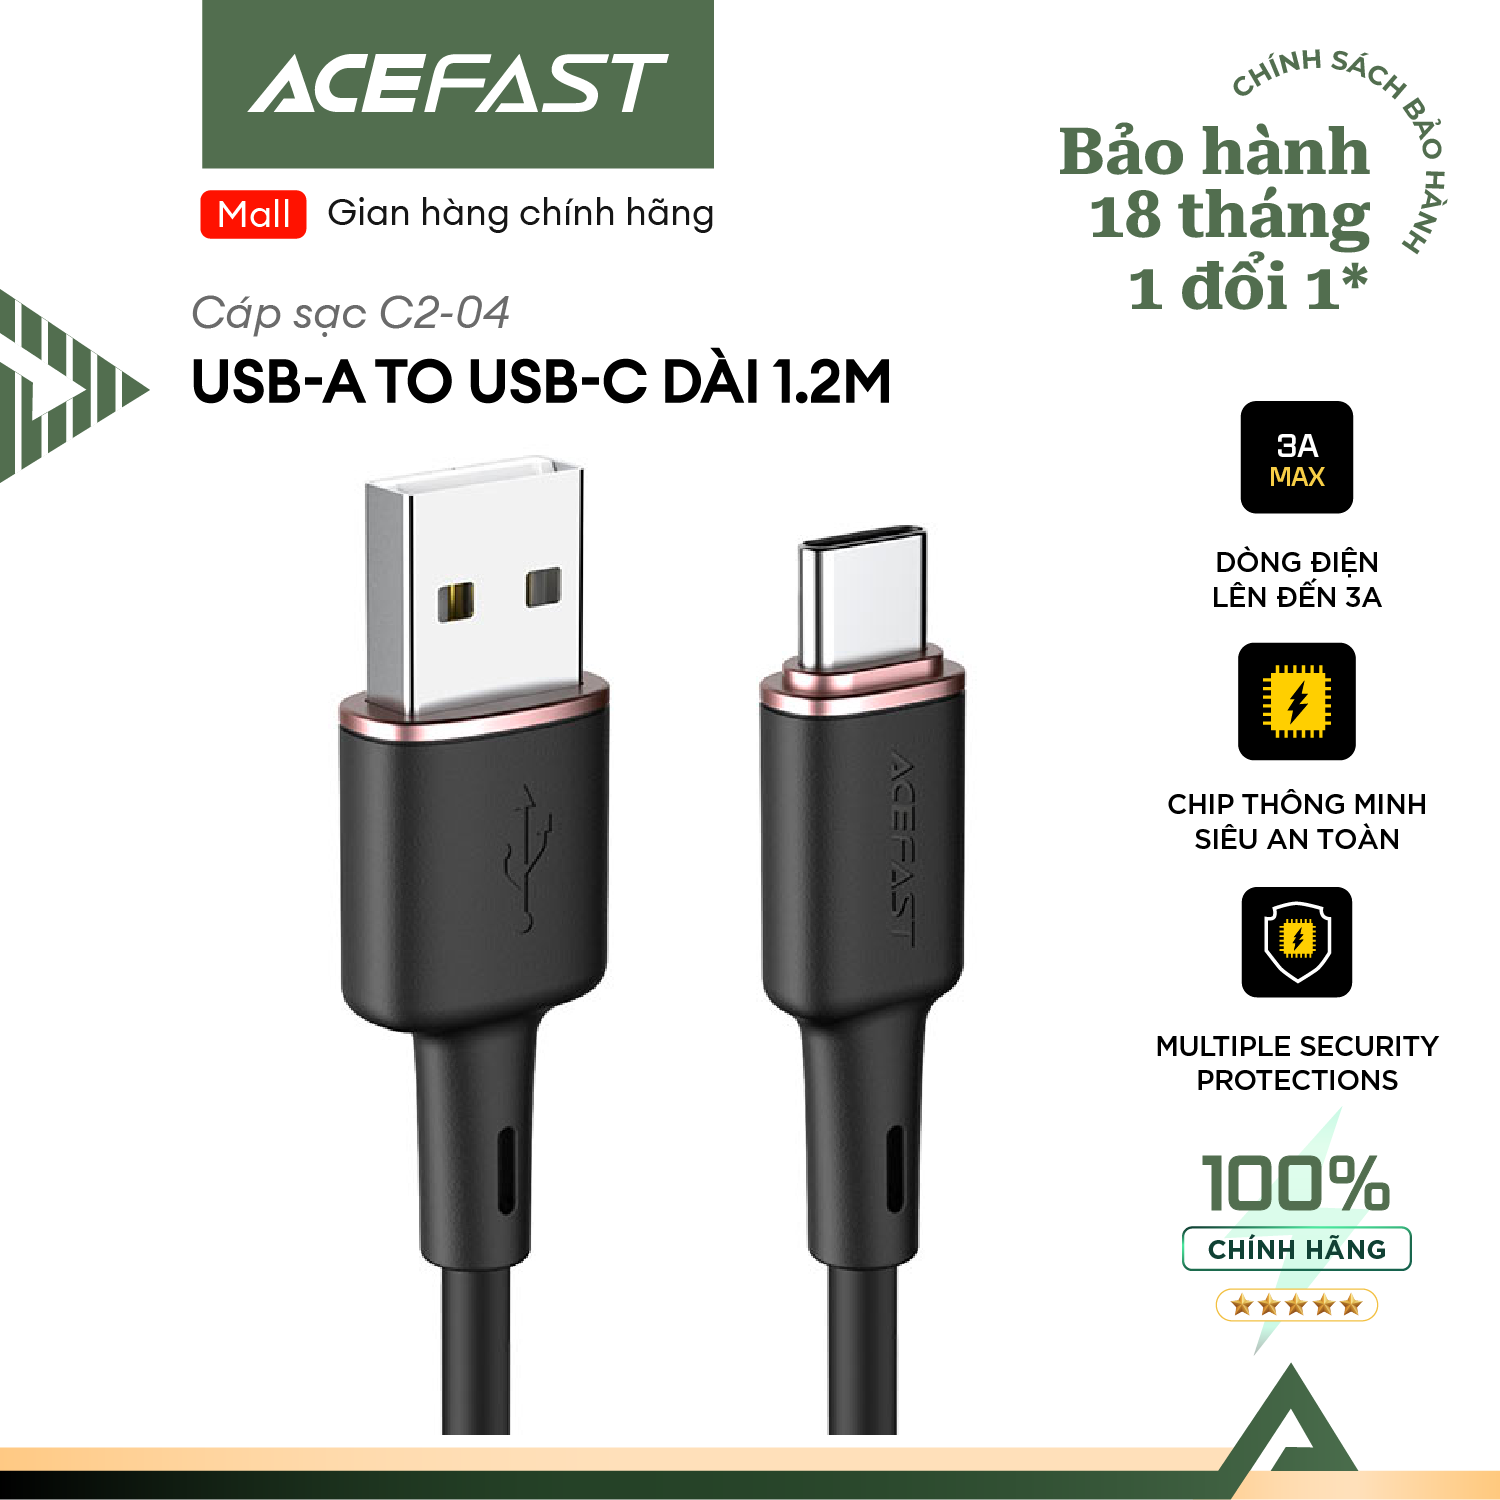 Cáp sạc Acefast cổng USB-A to USB-C (1.2m) - C2-04 Hàng chính hãng Acefast